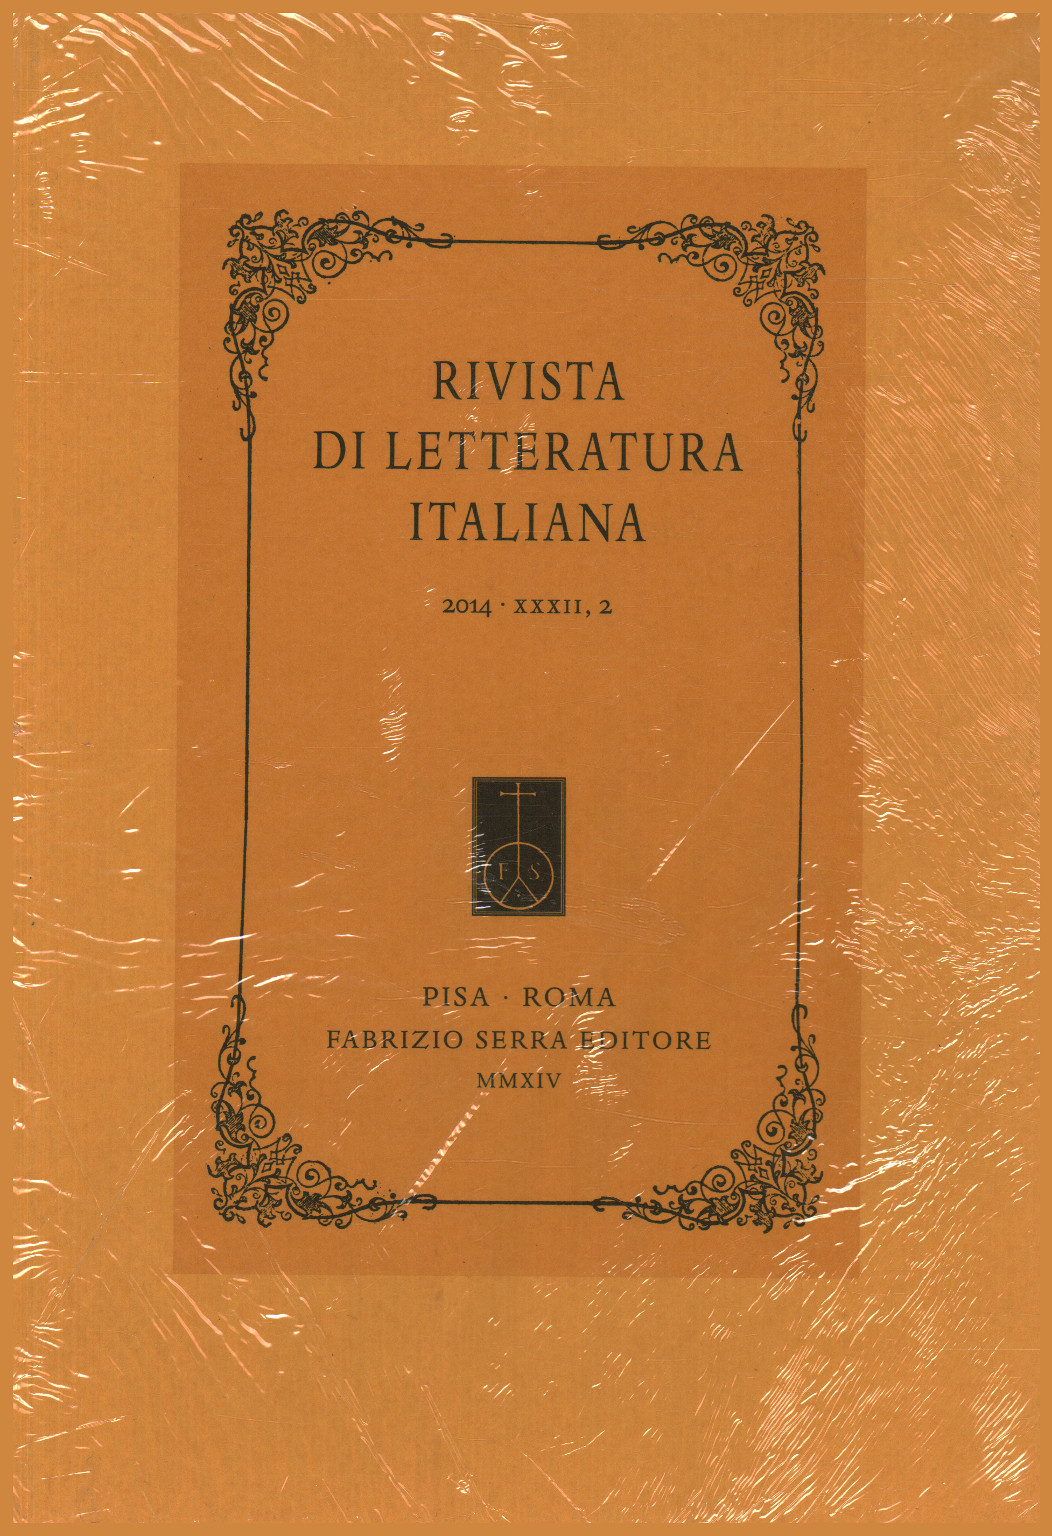 Rivista di letteratura italiana 2014,XXXII,2, s.a.